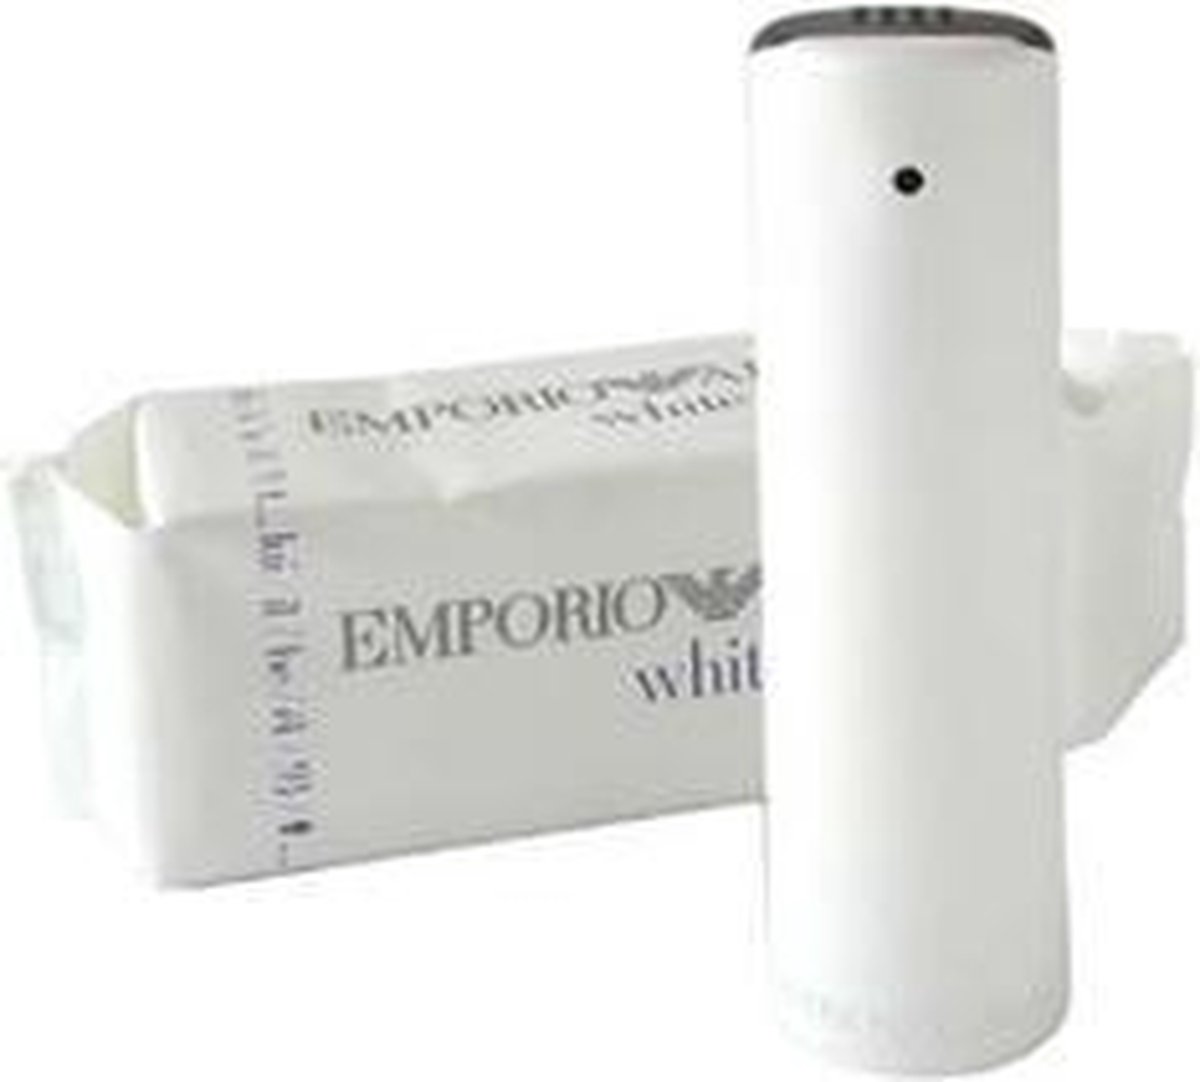 Emporio Armani - White for him - Eau de toilette - 50 ml 